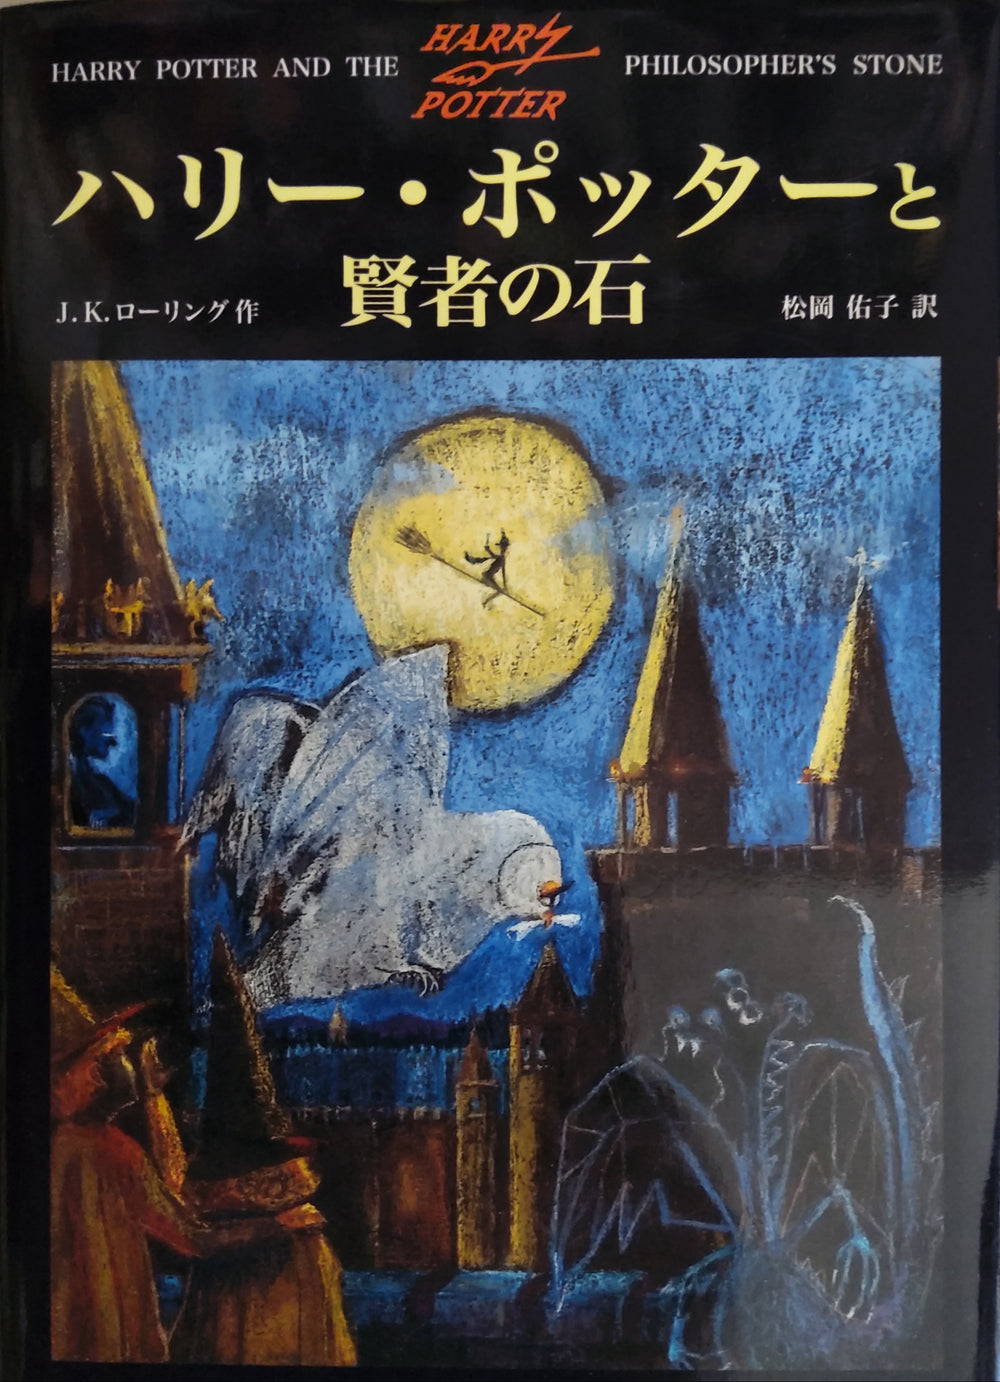 Harry Potter | Sorcerer's Stone & Chamber of Secrets | Books 1 & 2 Japanese